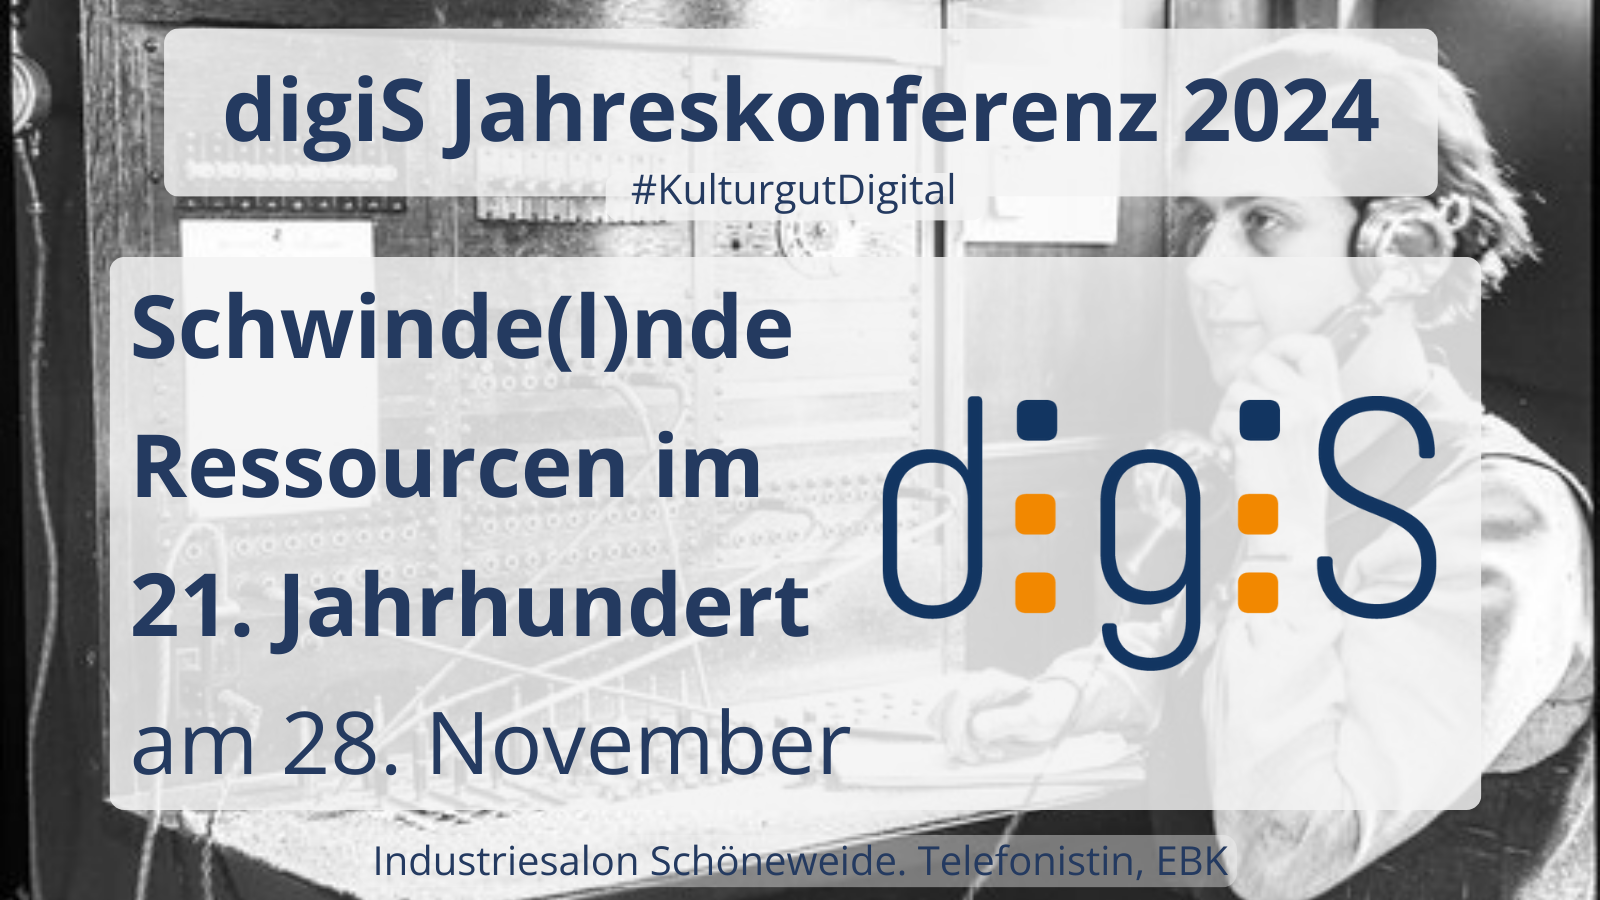 Save the Date: digiS Jahreskonferenz am 28.11.2024